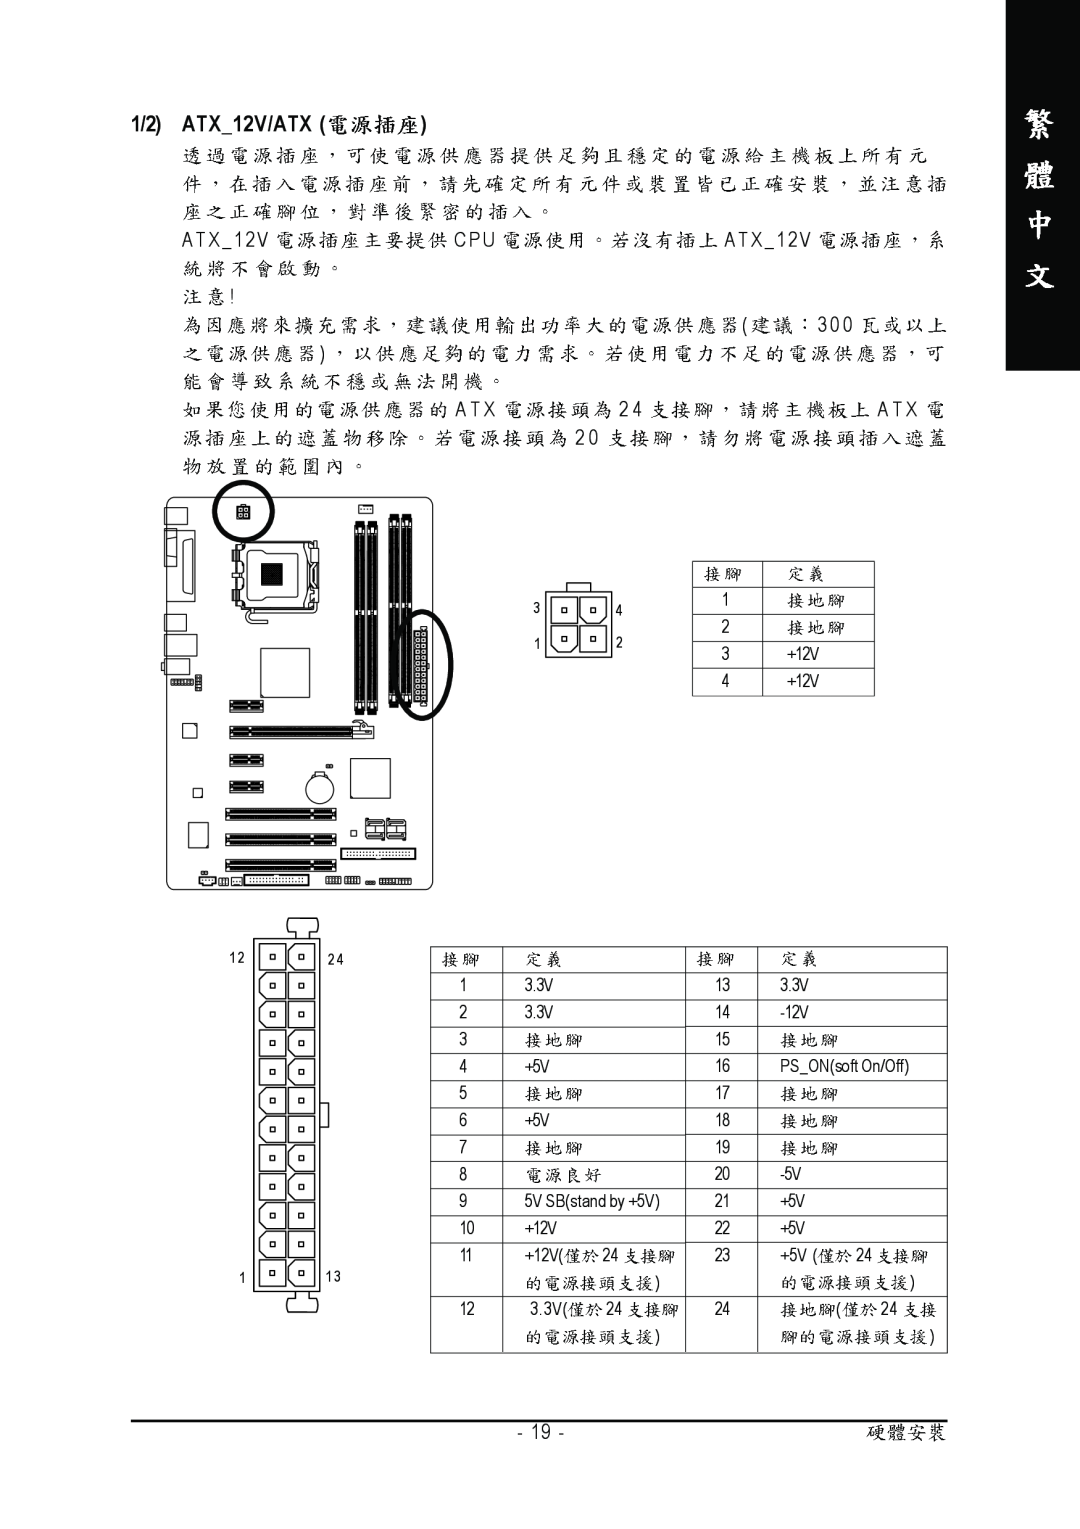 Intel GA-945P-S3 manual 1/2 ATX12V/ATX, A T X 1 2 V C P U A T X 1 2, A T X 2 4 A T X 2 